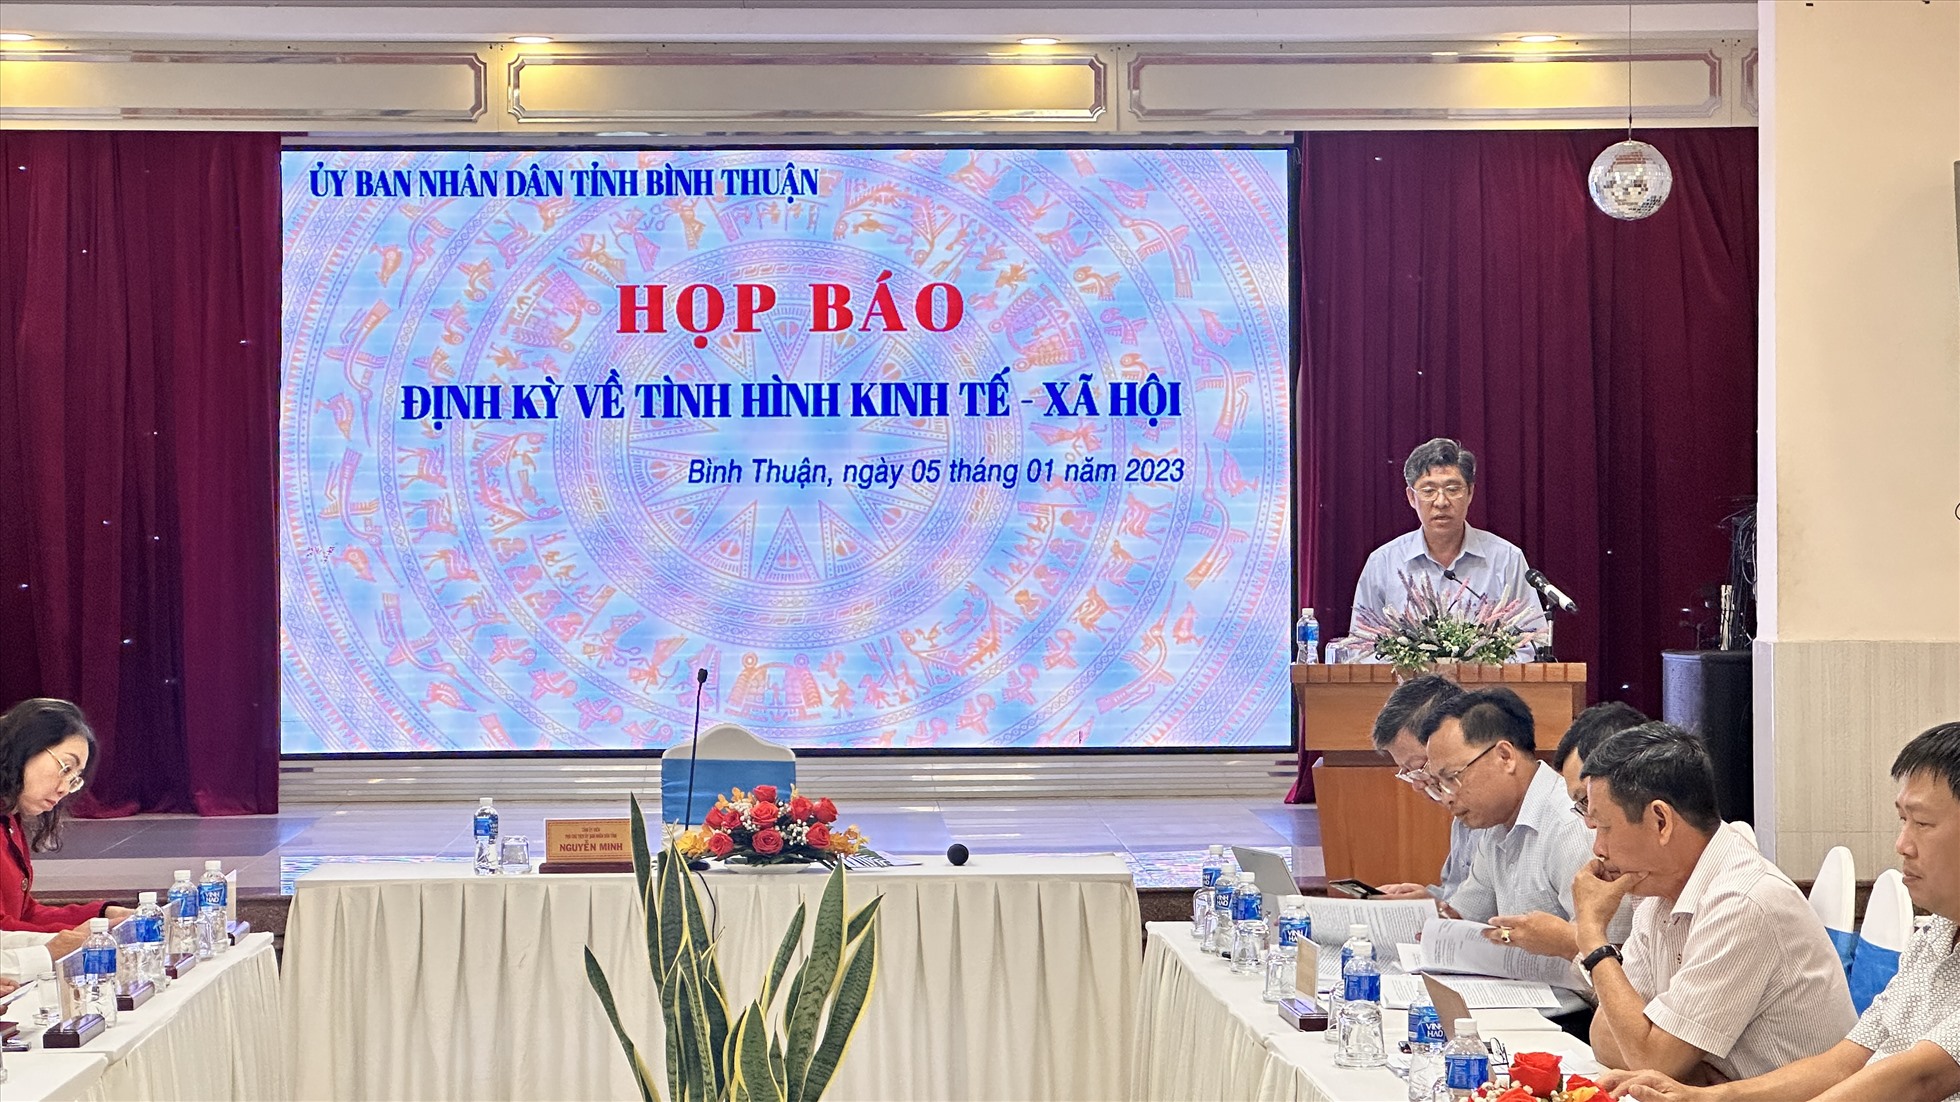 Ông Nguyễn Minh, phó chủ tịch UBND tỉnh Bình Thuận phát biểu tại buổi họp báo. Ảnh: Duy Tuấn